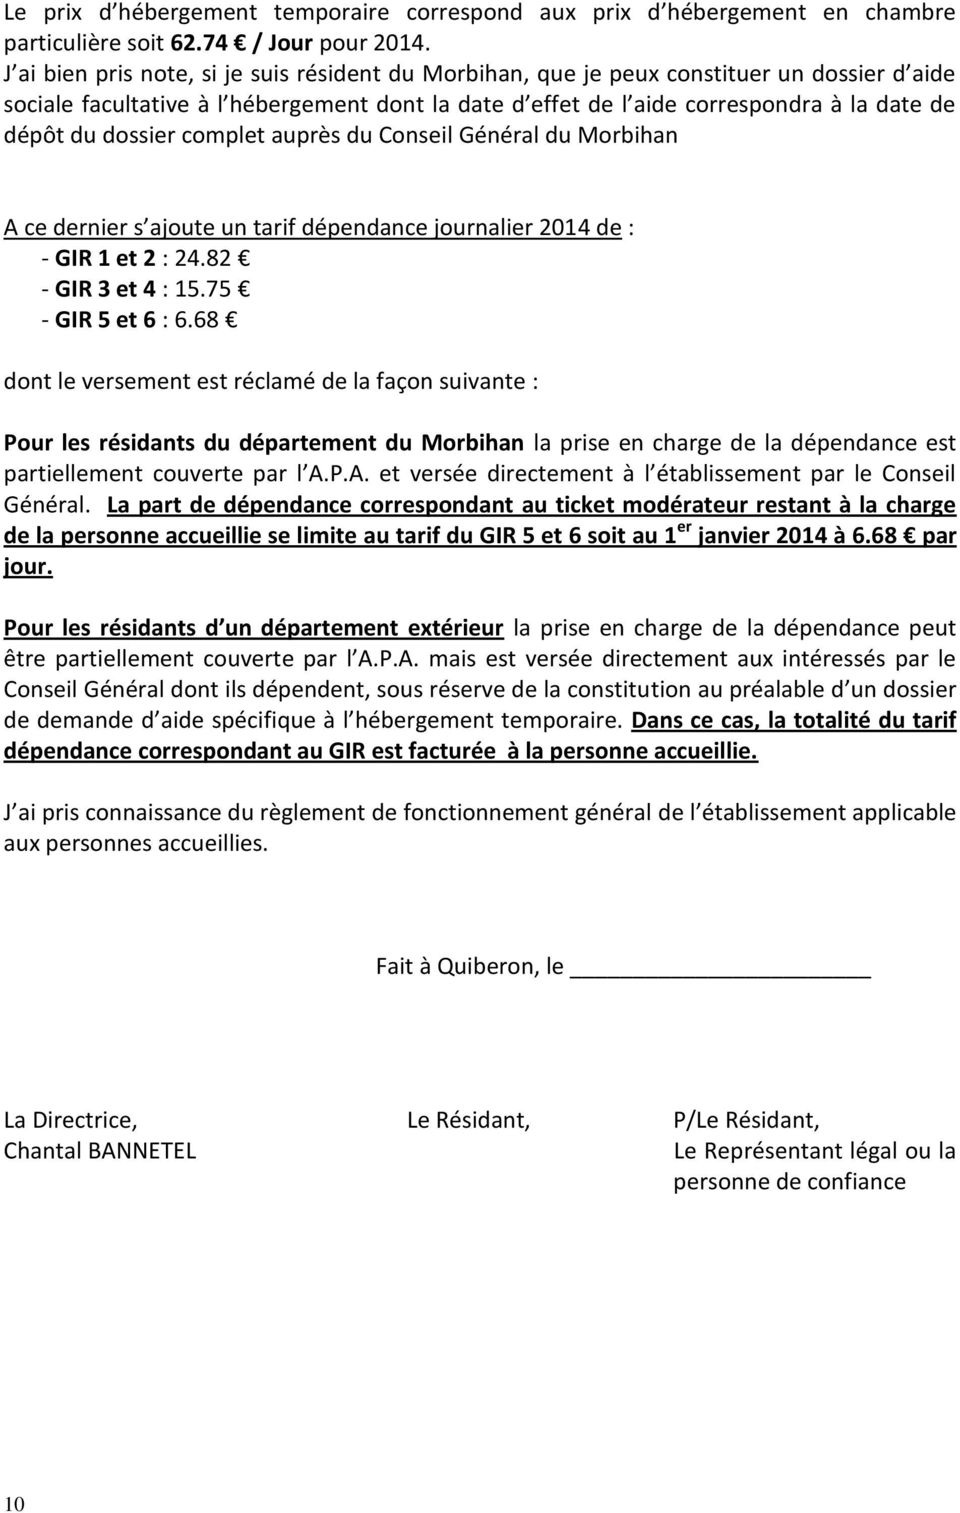 dossier complet auprès du Conseil Général du Morbihan A ce dernier s ajoute un tarif dépendance journalier 2014 de : - GIR 1 et 2 : 24.82 - GIR 3 et 4 : 15.75 - GIR 5 et 6 : 6.